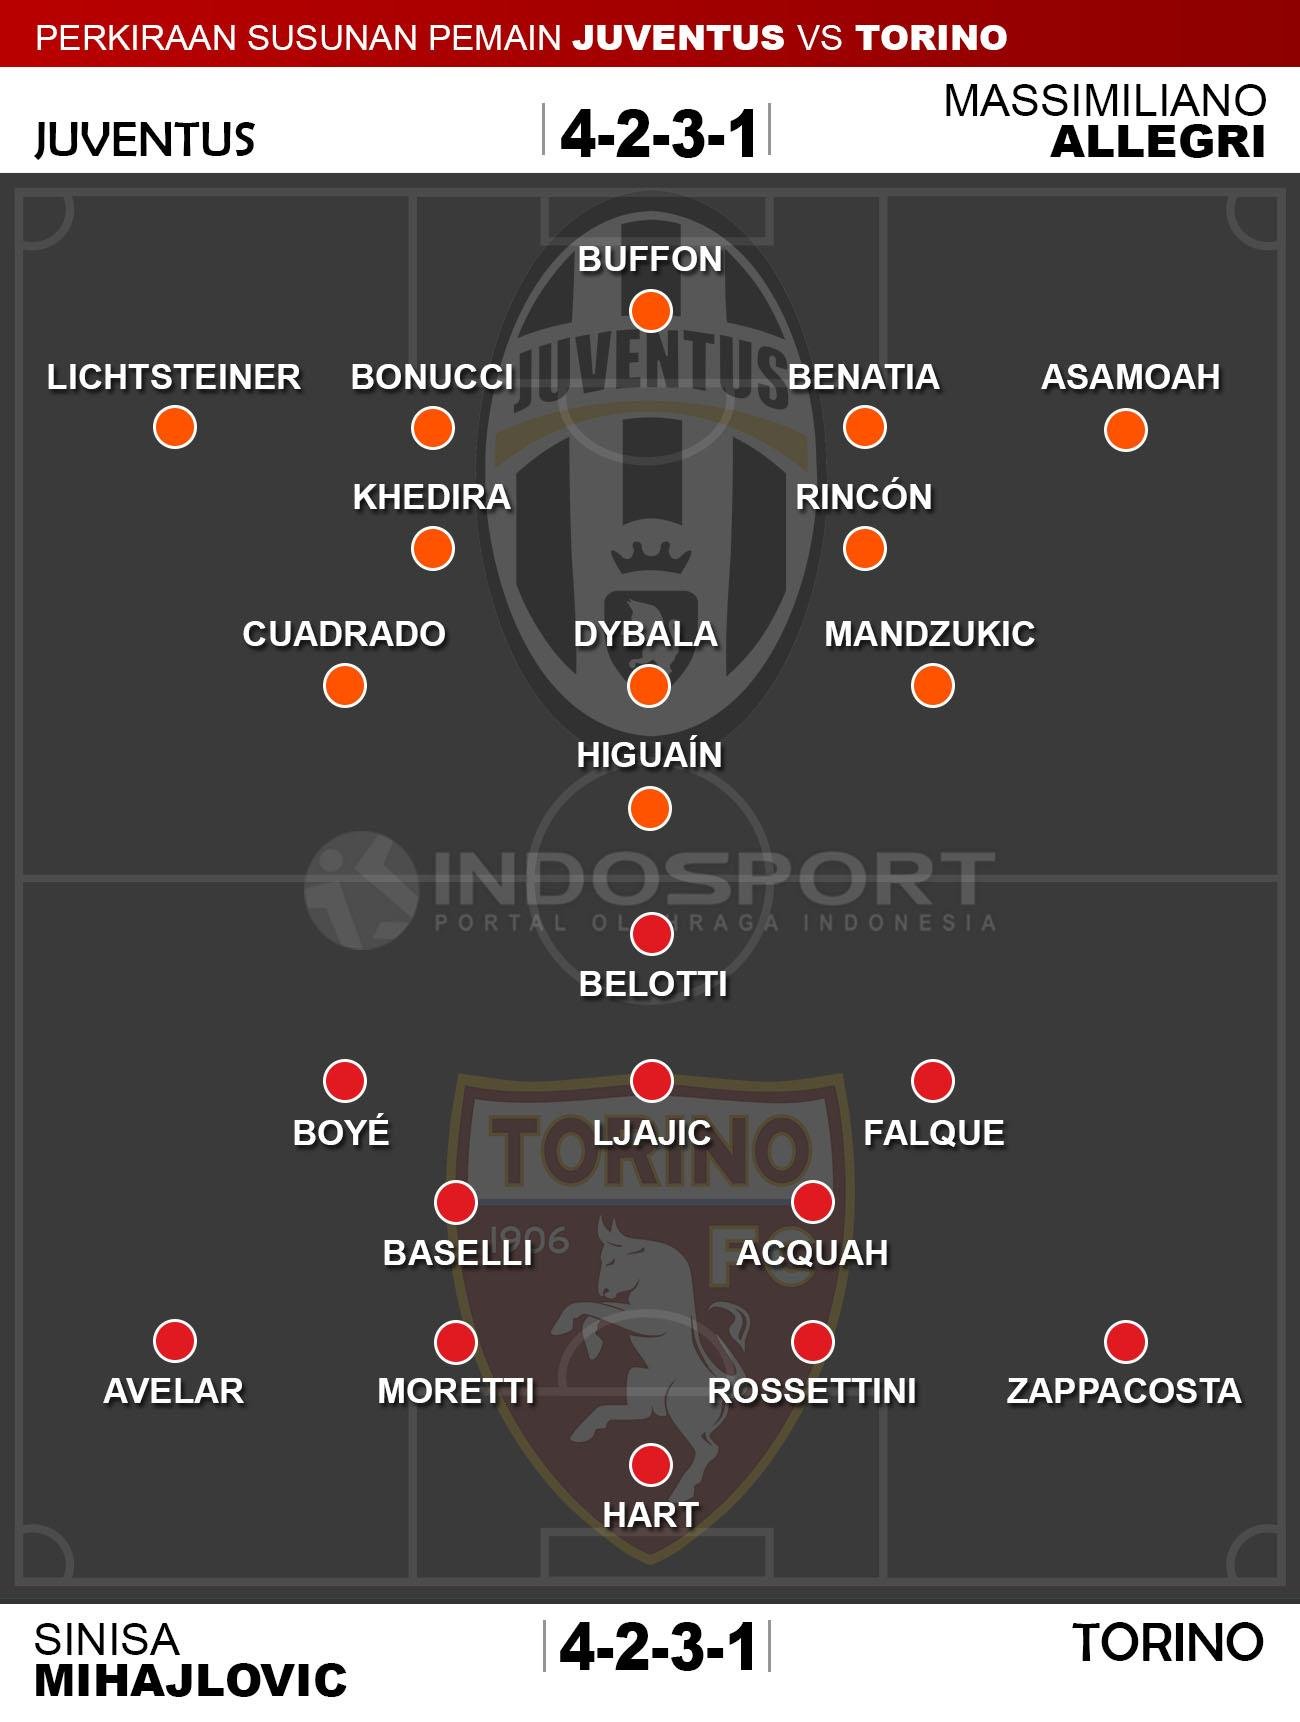 Susunan Pemain Juventus vs Torino Copyright: Indosport/Whoscored